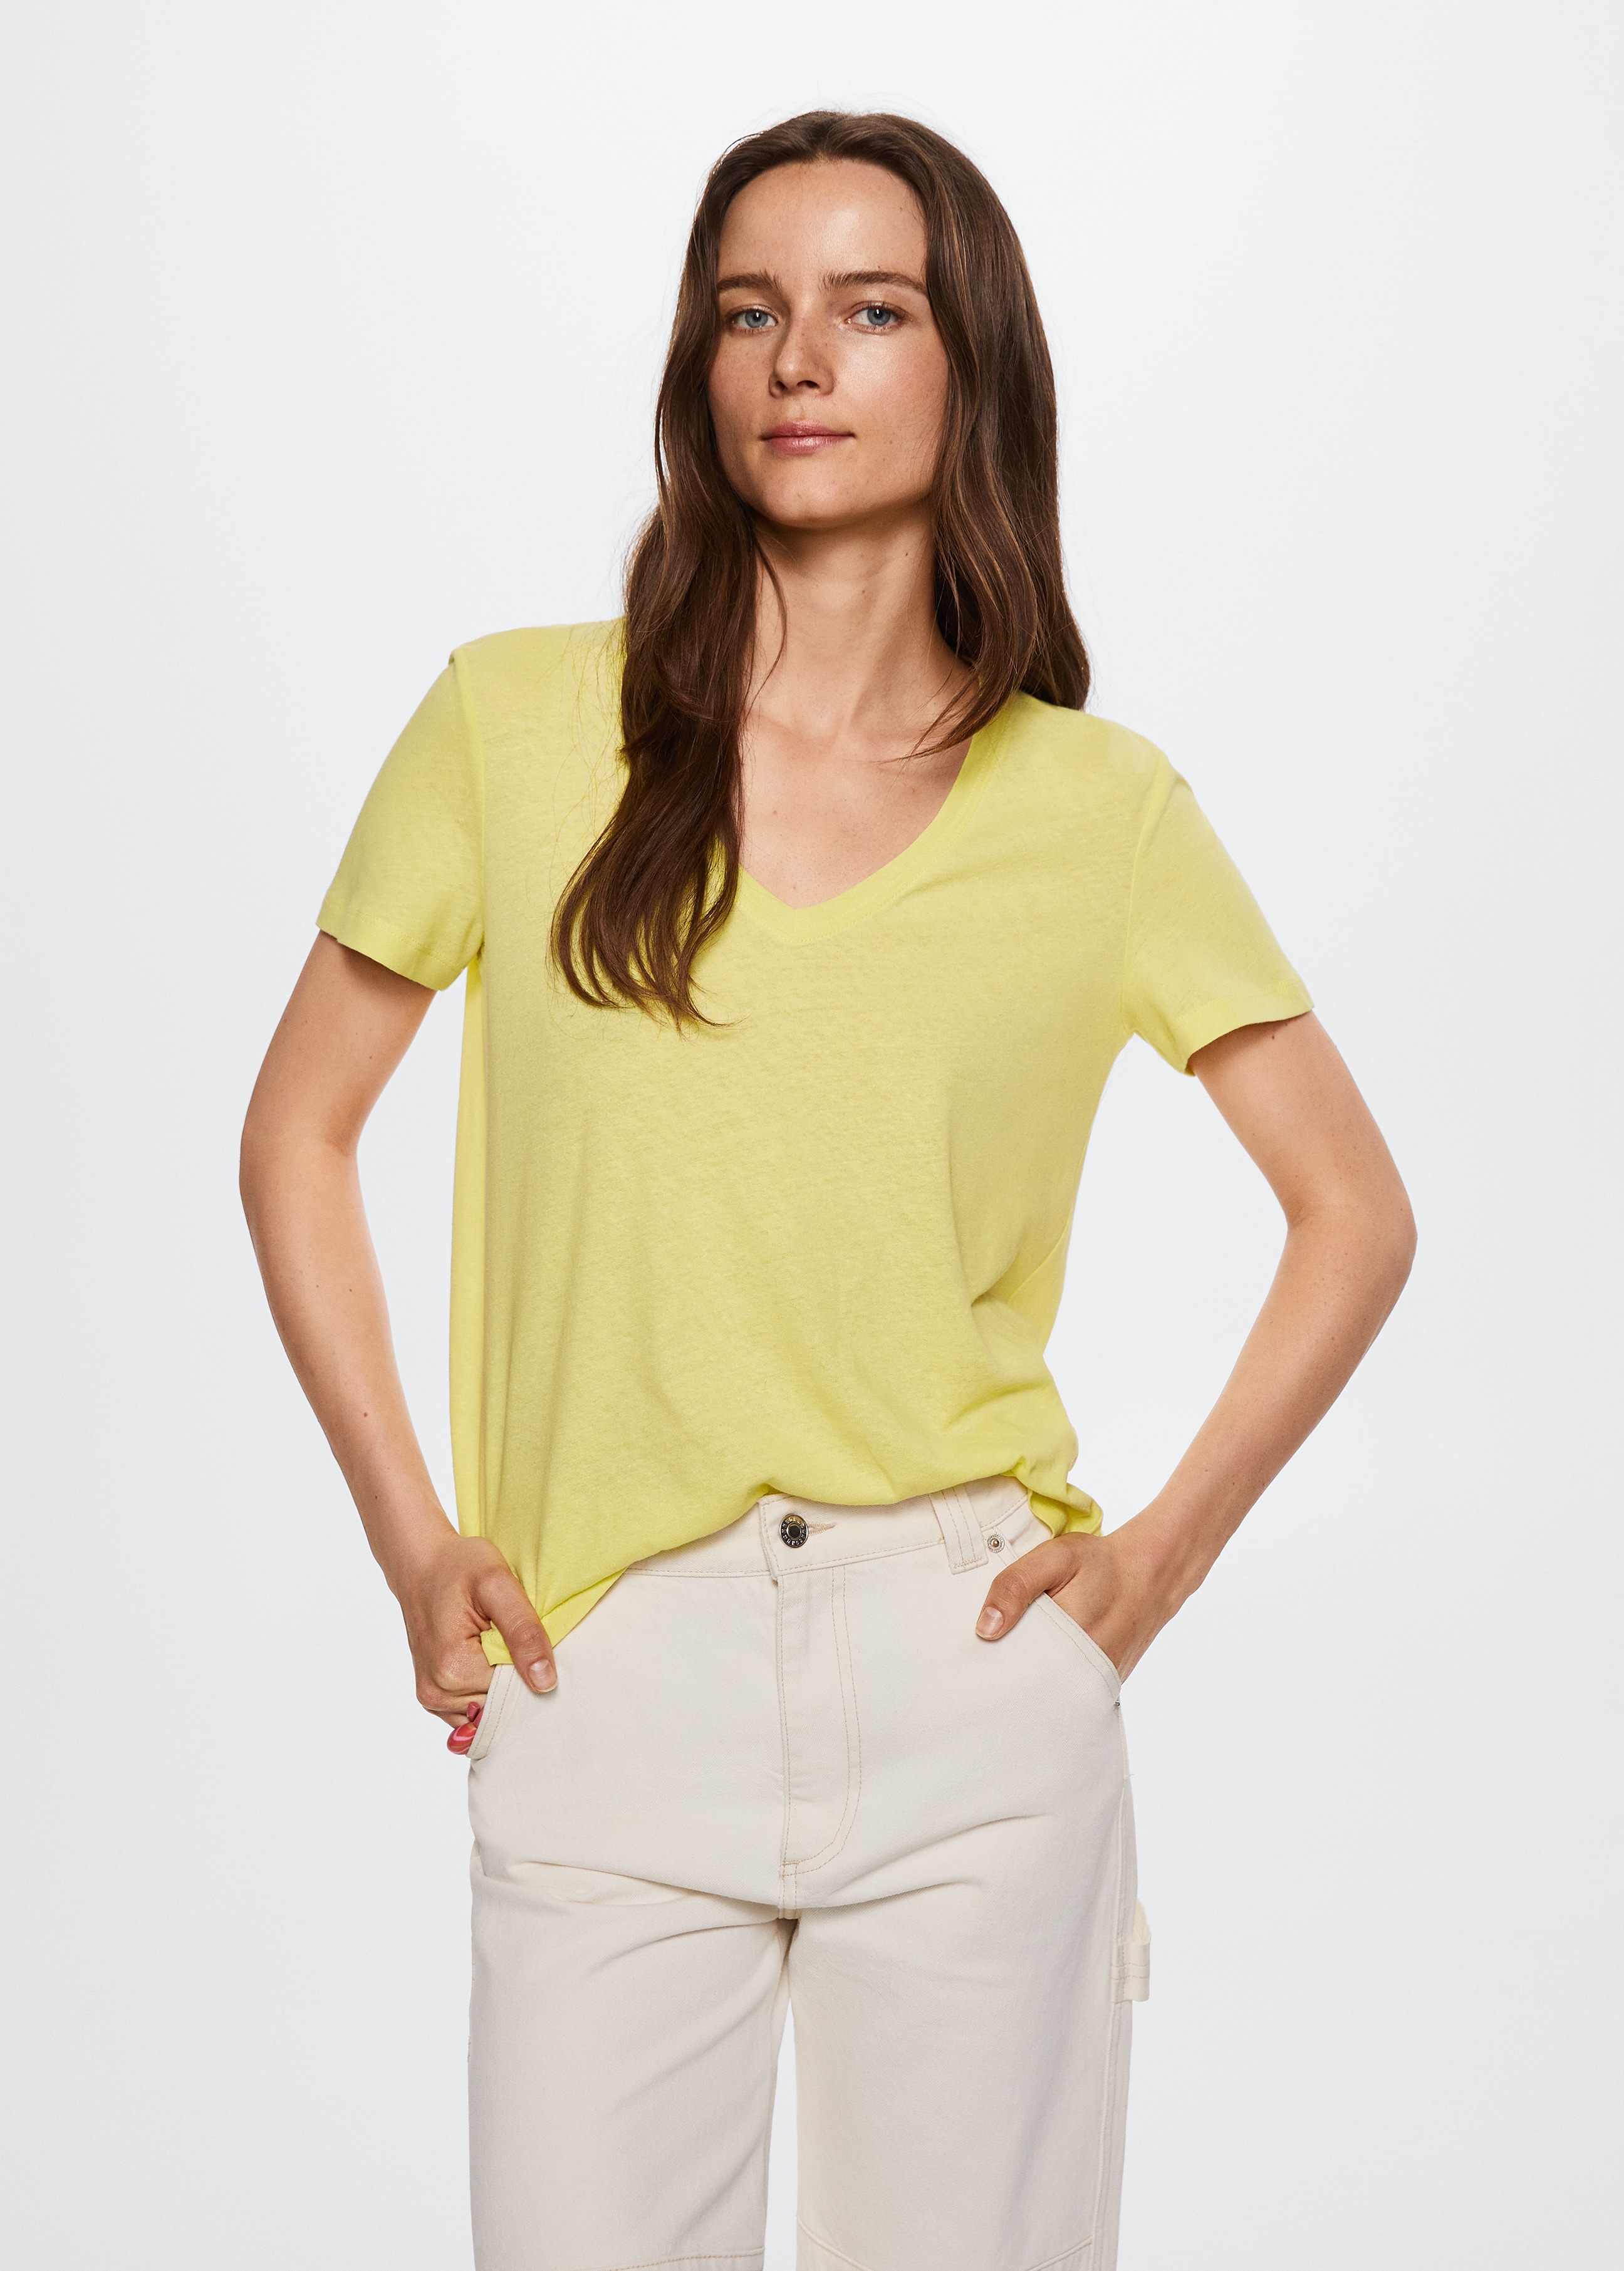 Cotton linen-blend T-shirt - Medium plane